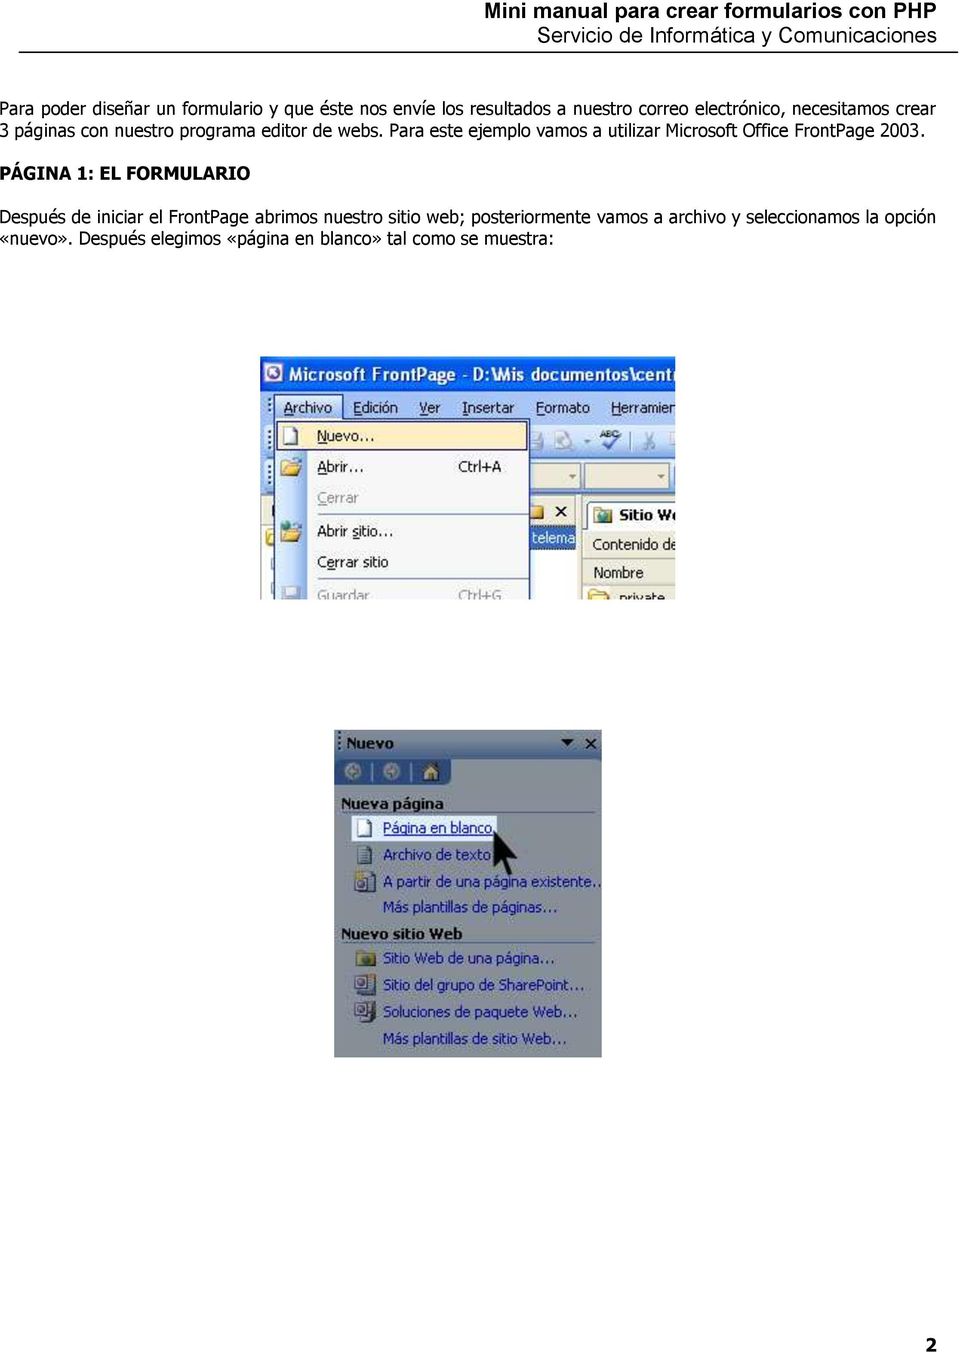 Para este ejemplo vamos a utilizar Microsoft Office FrontPage 2003.